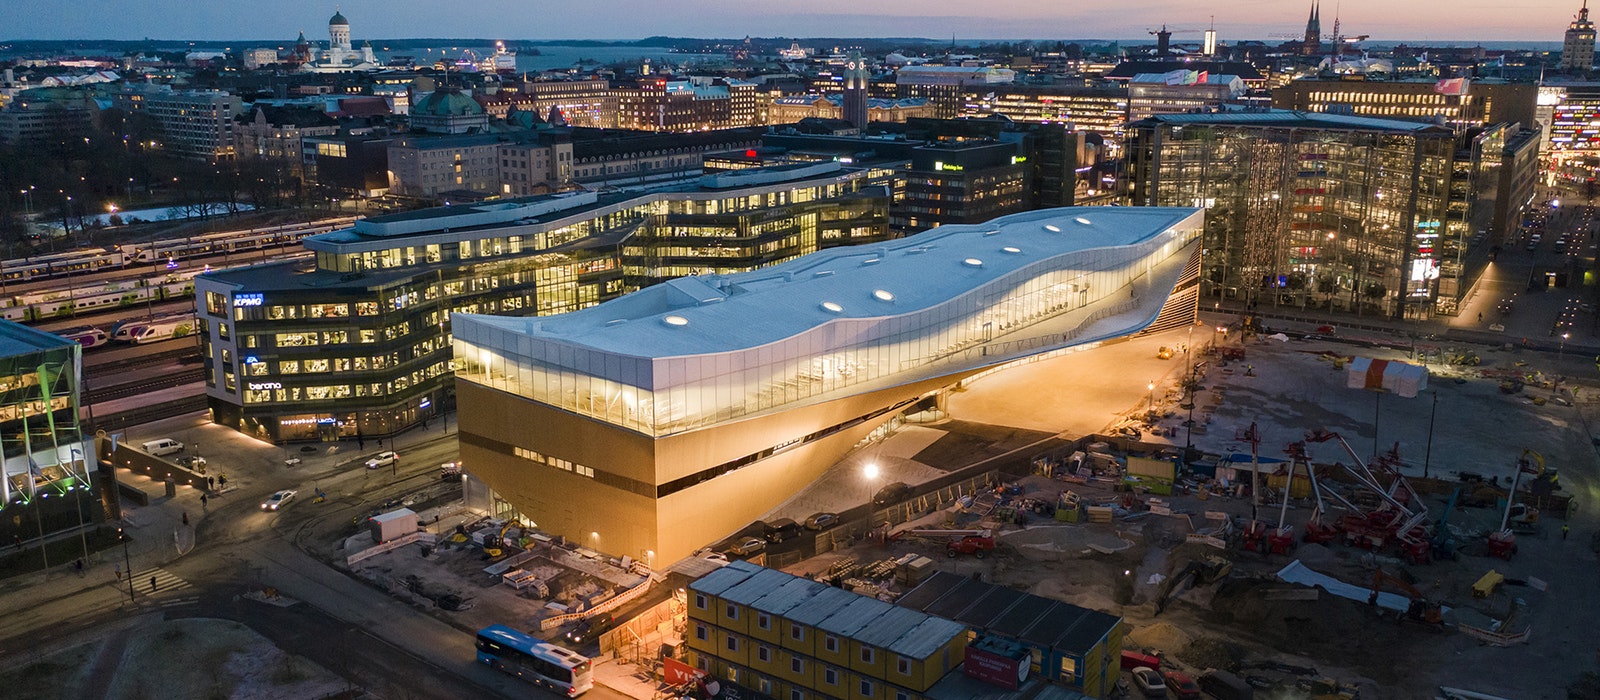 Oodi Helsinki Central Library: a Biblioteca como ágora dunha nova era